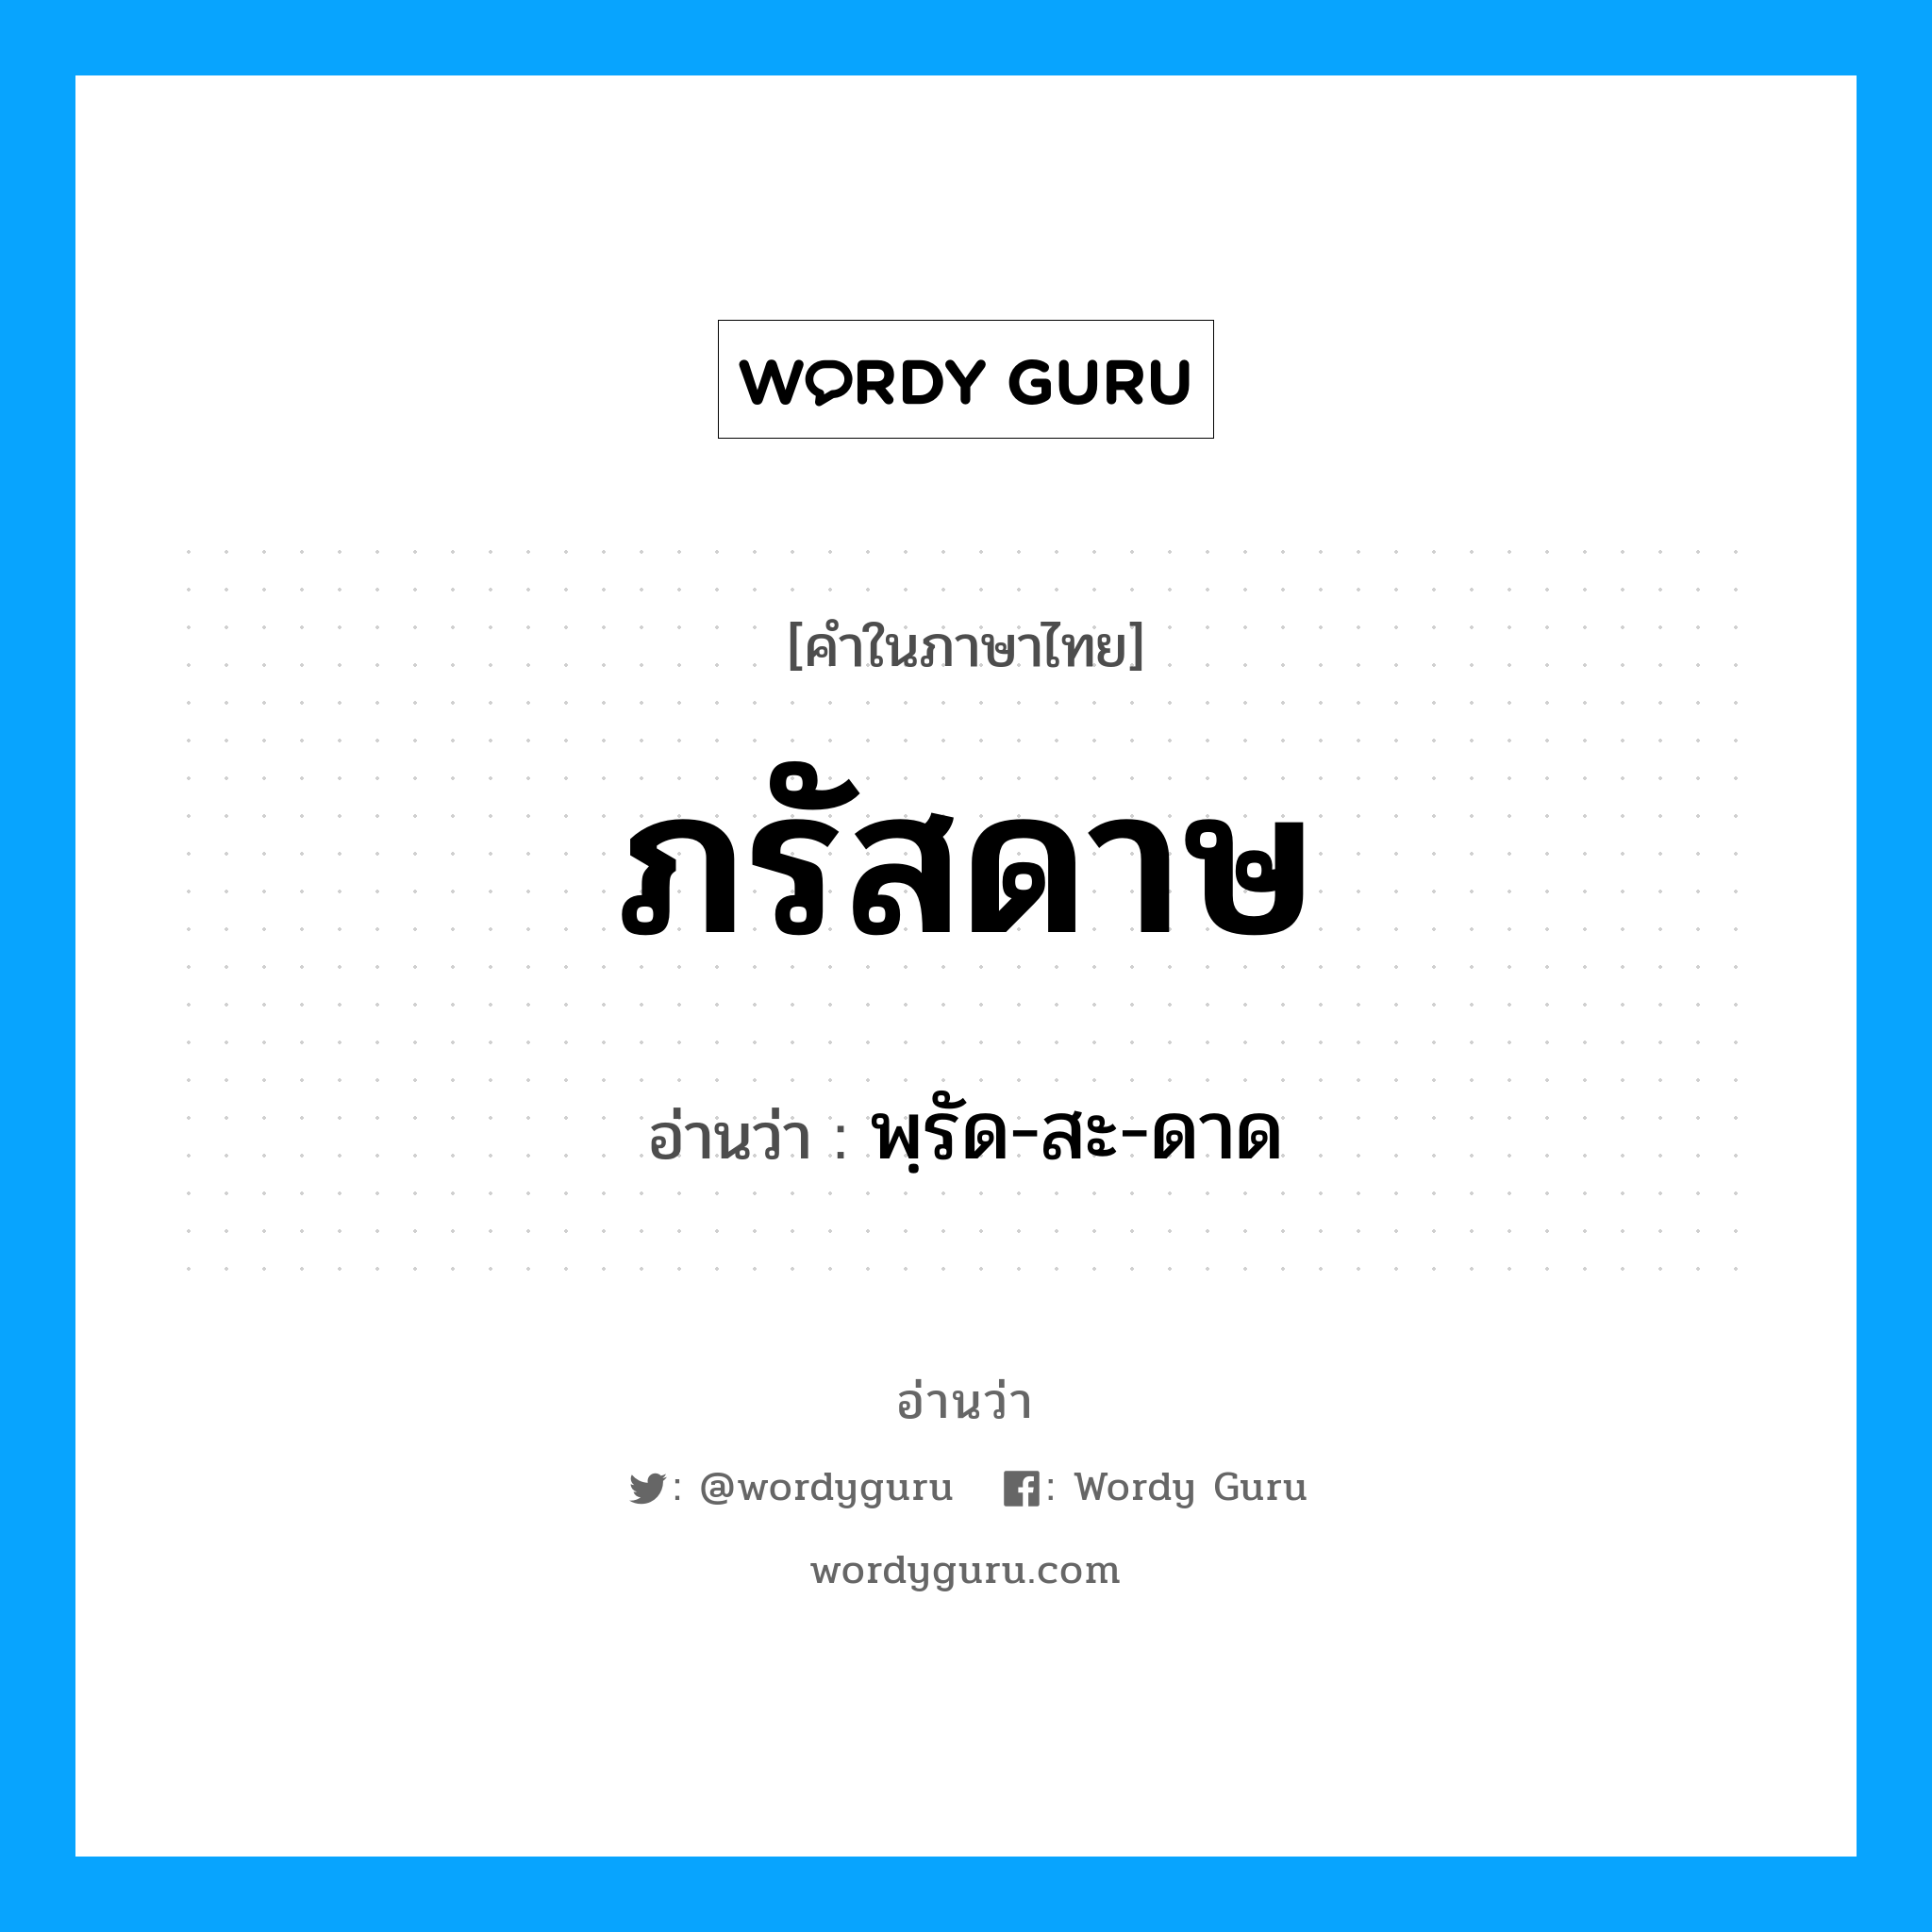 พฺรัด-สะ-ดาด เป็นคำอ่านของคำไหน?, คำในภาษาไทย พฺรัด-สะ-ดาด อ่านว่า ภรัสดาษ